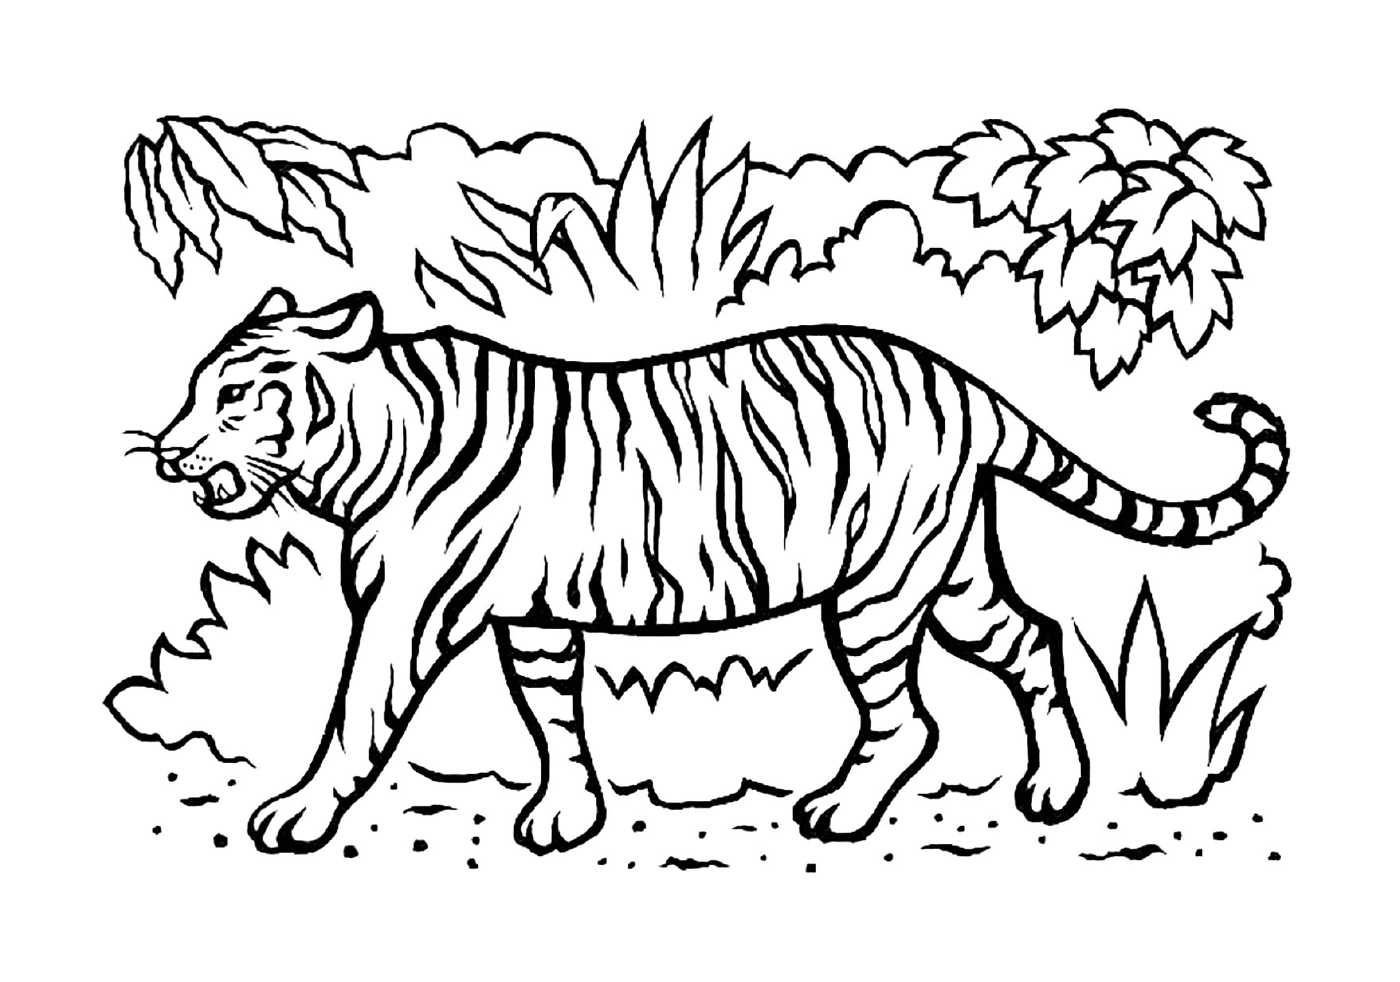  Um belo tigre na savana 